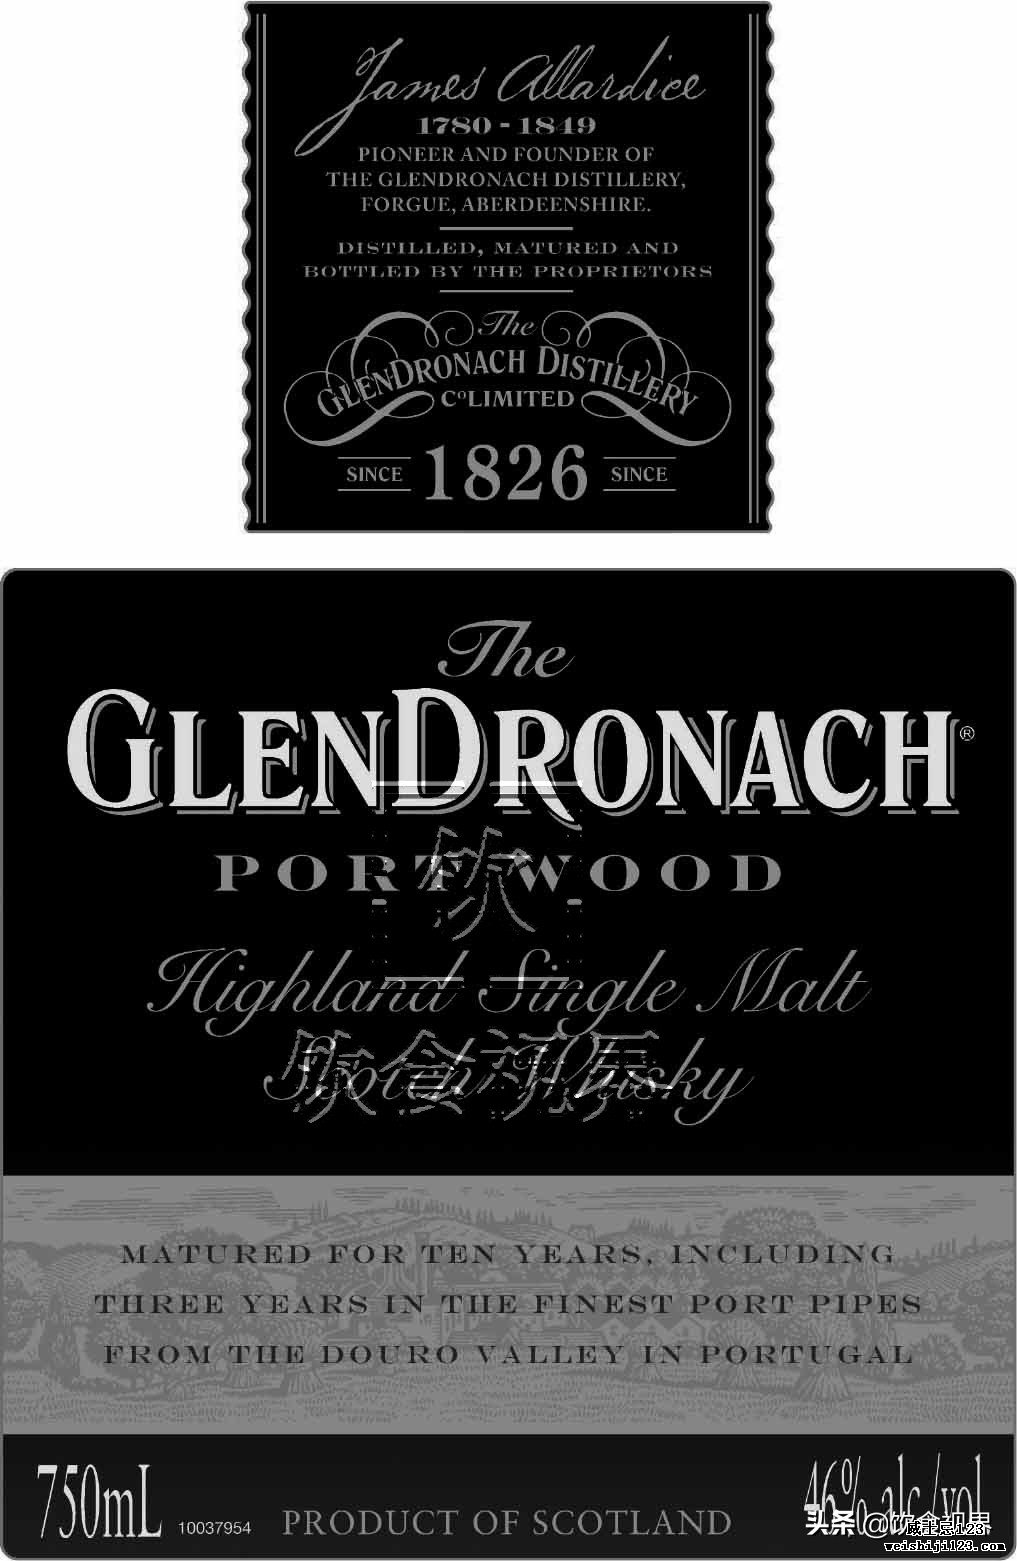 格兰多纳(Glendronach)Port Wood或将转为无酒龄酒款!